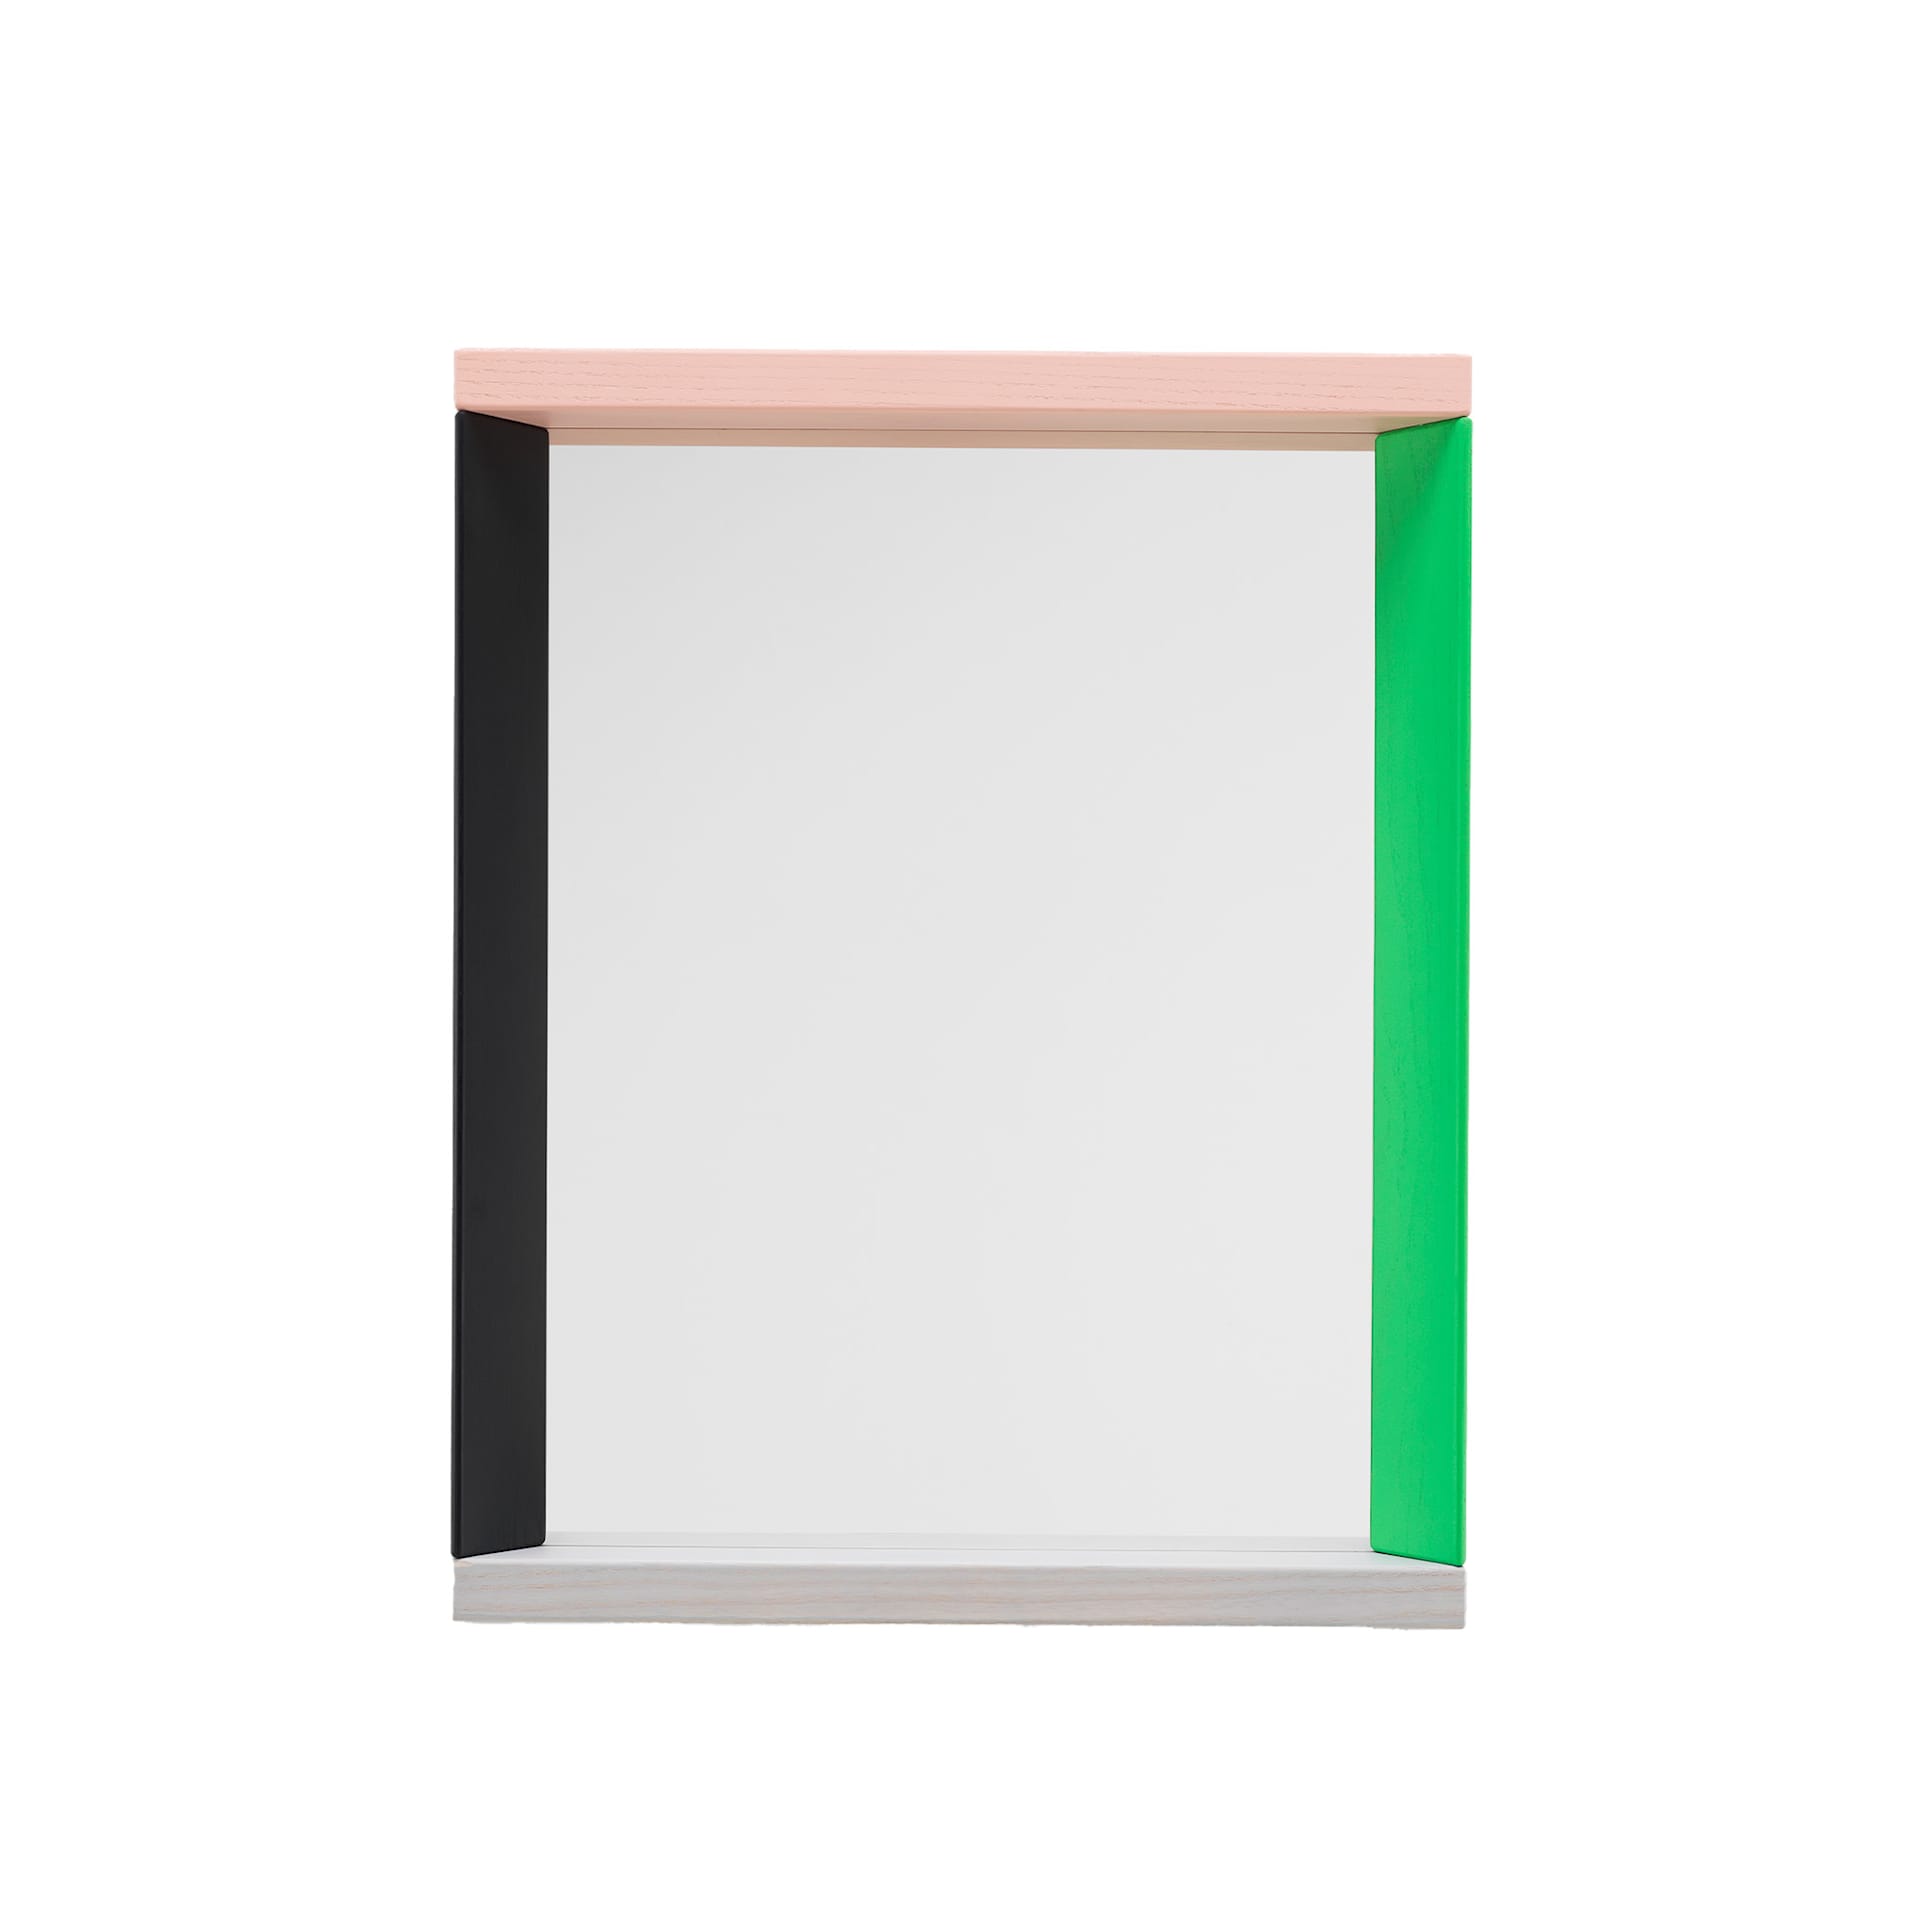 Colour Frame Mirror Small - Vitra - NO GA